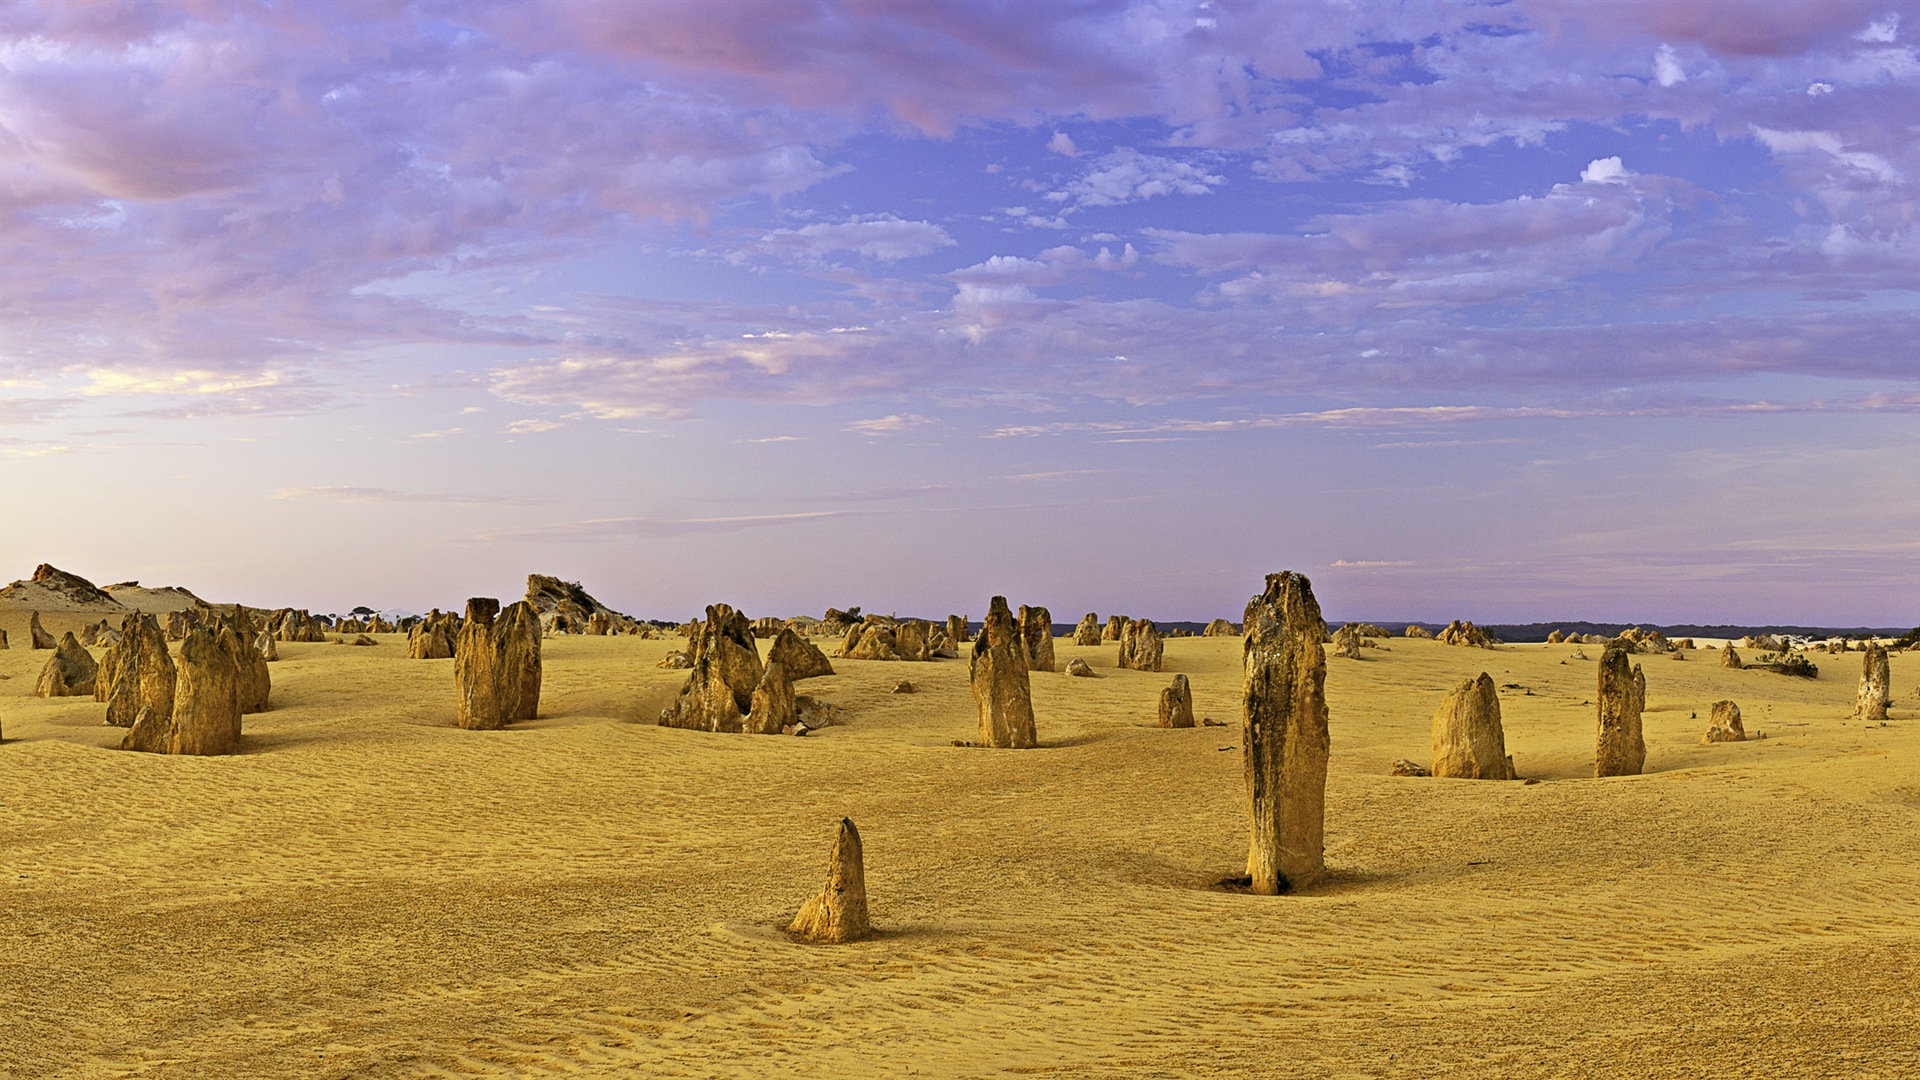 Les déserts chauds et arides, de Windows 8 fonds d'écran widescreen panoramique #8 - 1920x1080